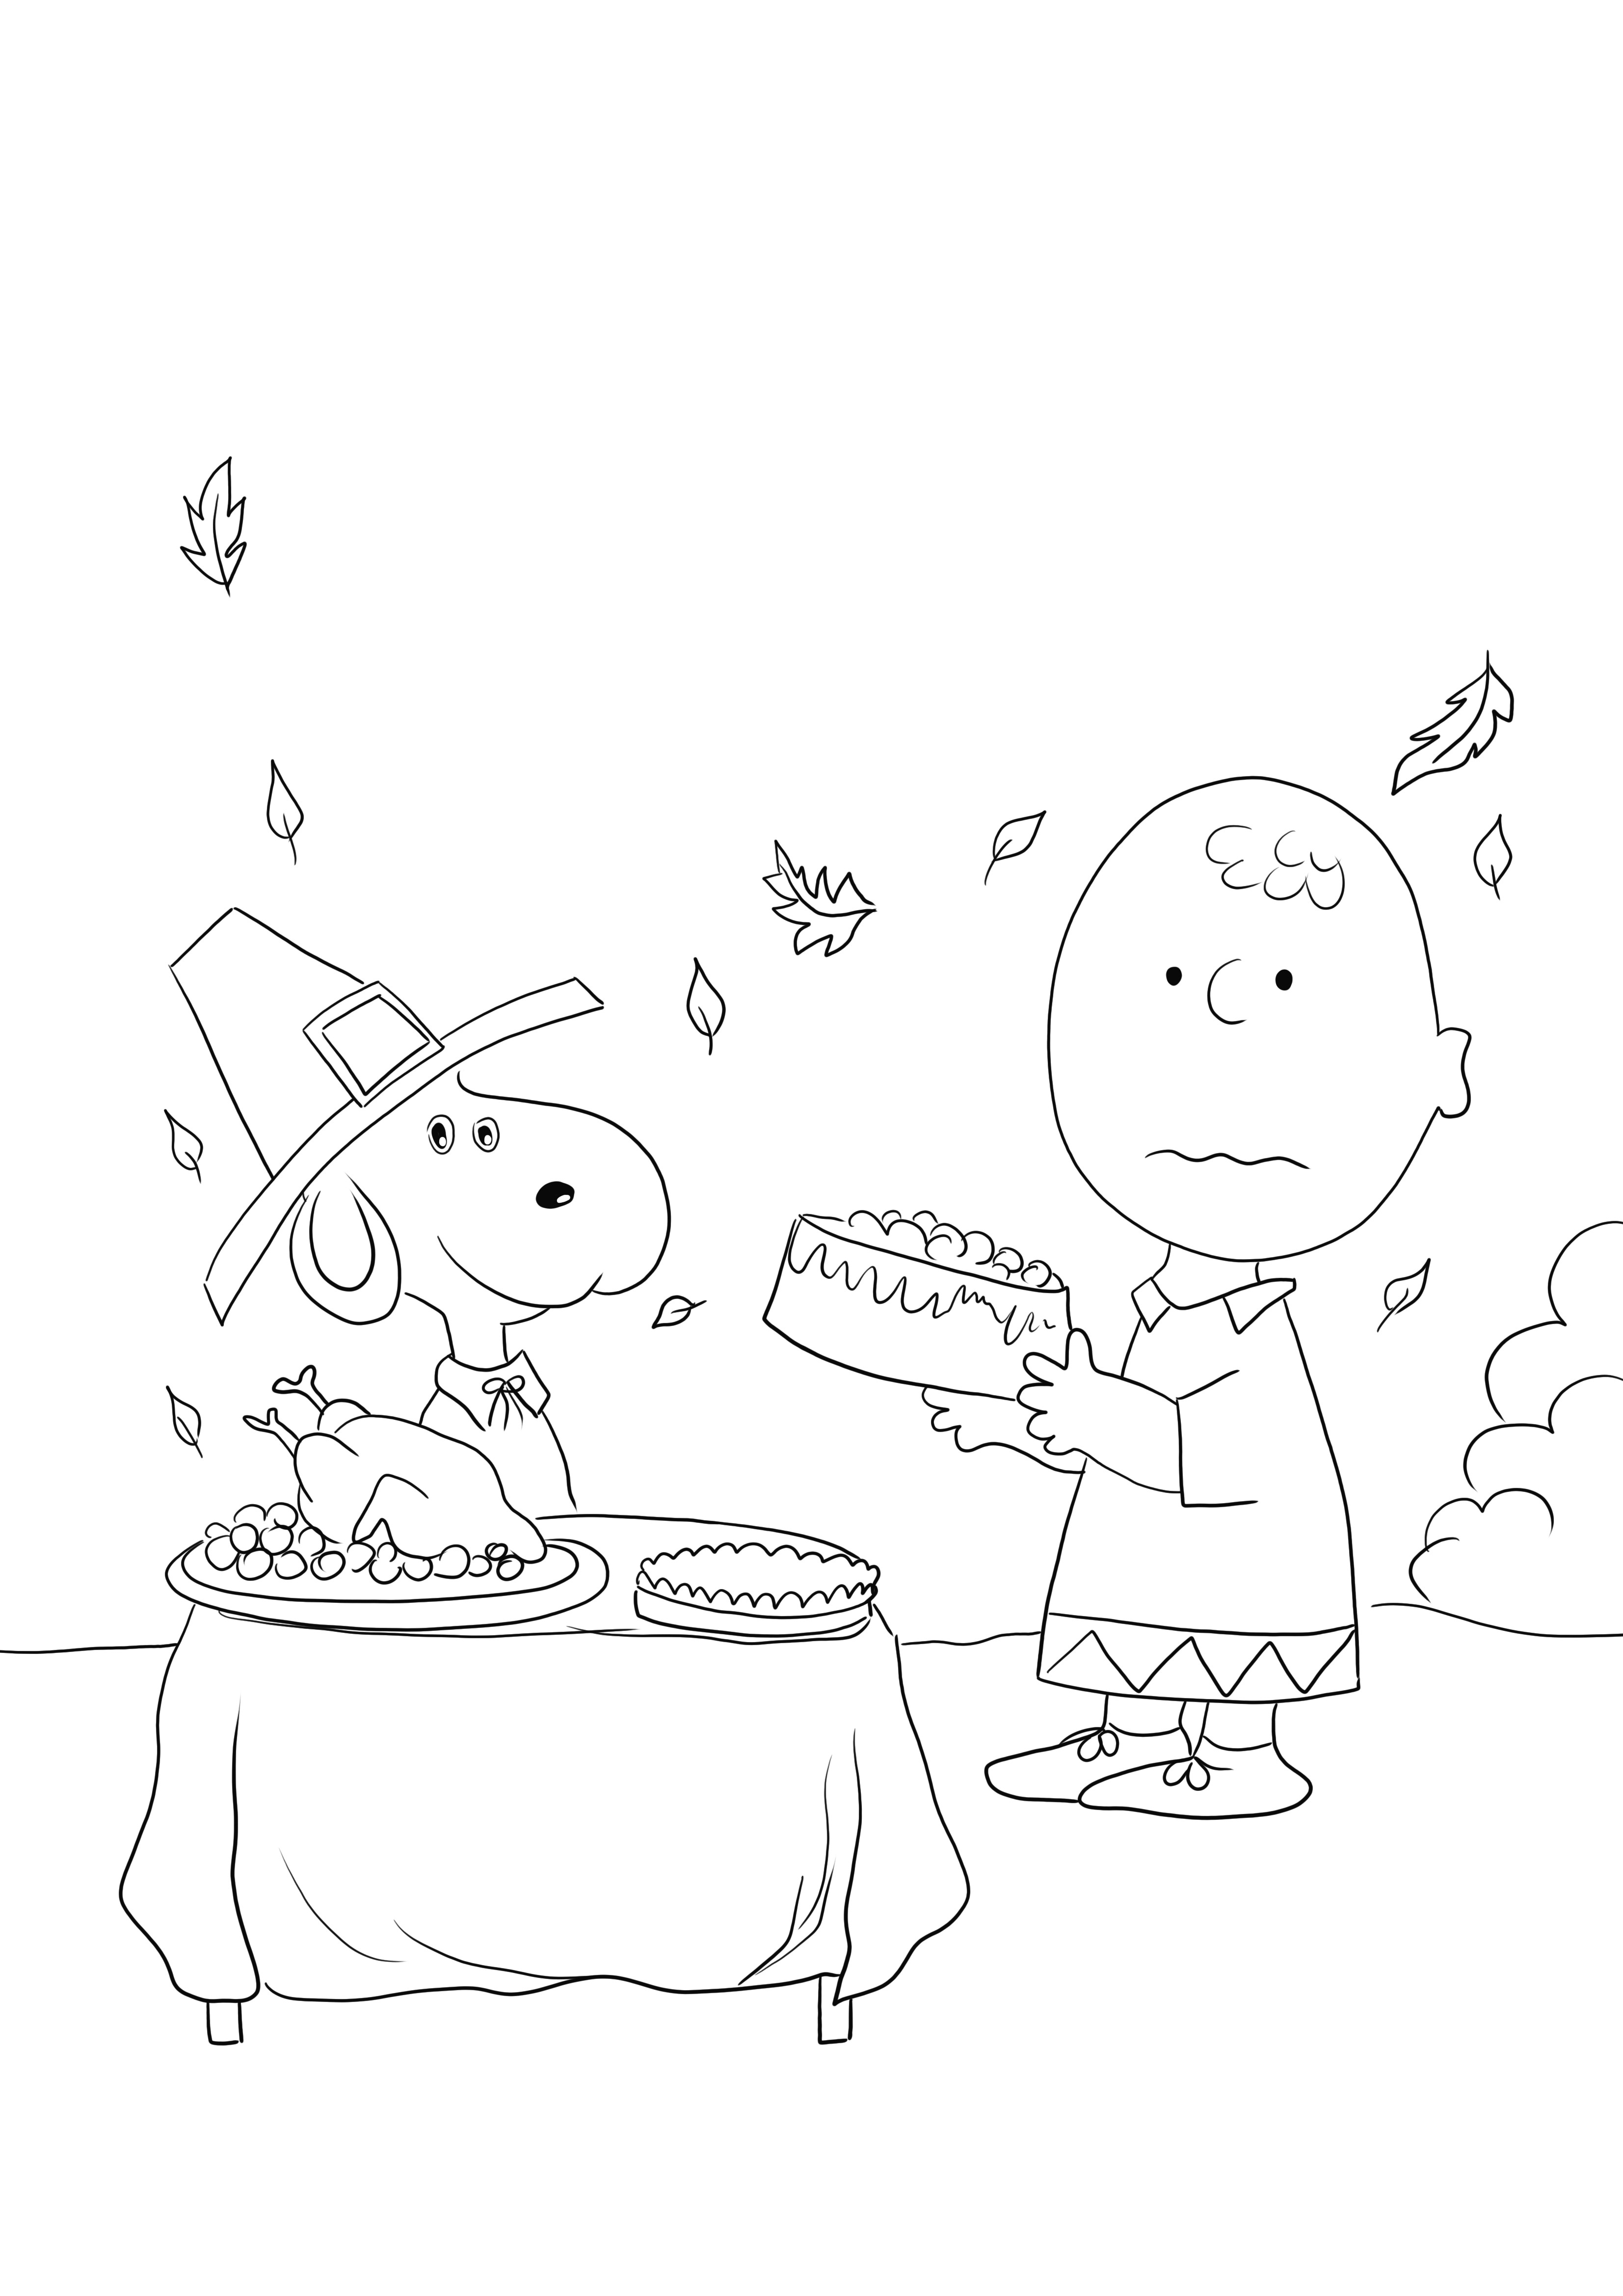 Thanksgiving Charlie Brown mudah diunduh atau disimpan untuk nanti dan lembar warna